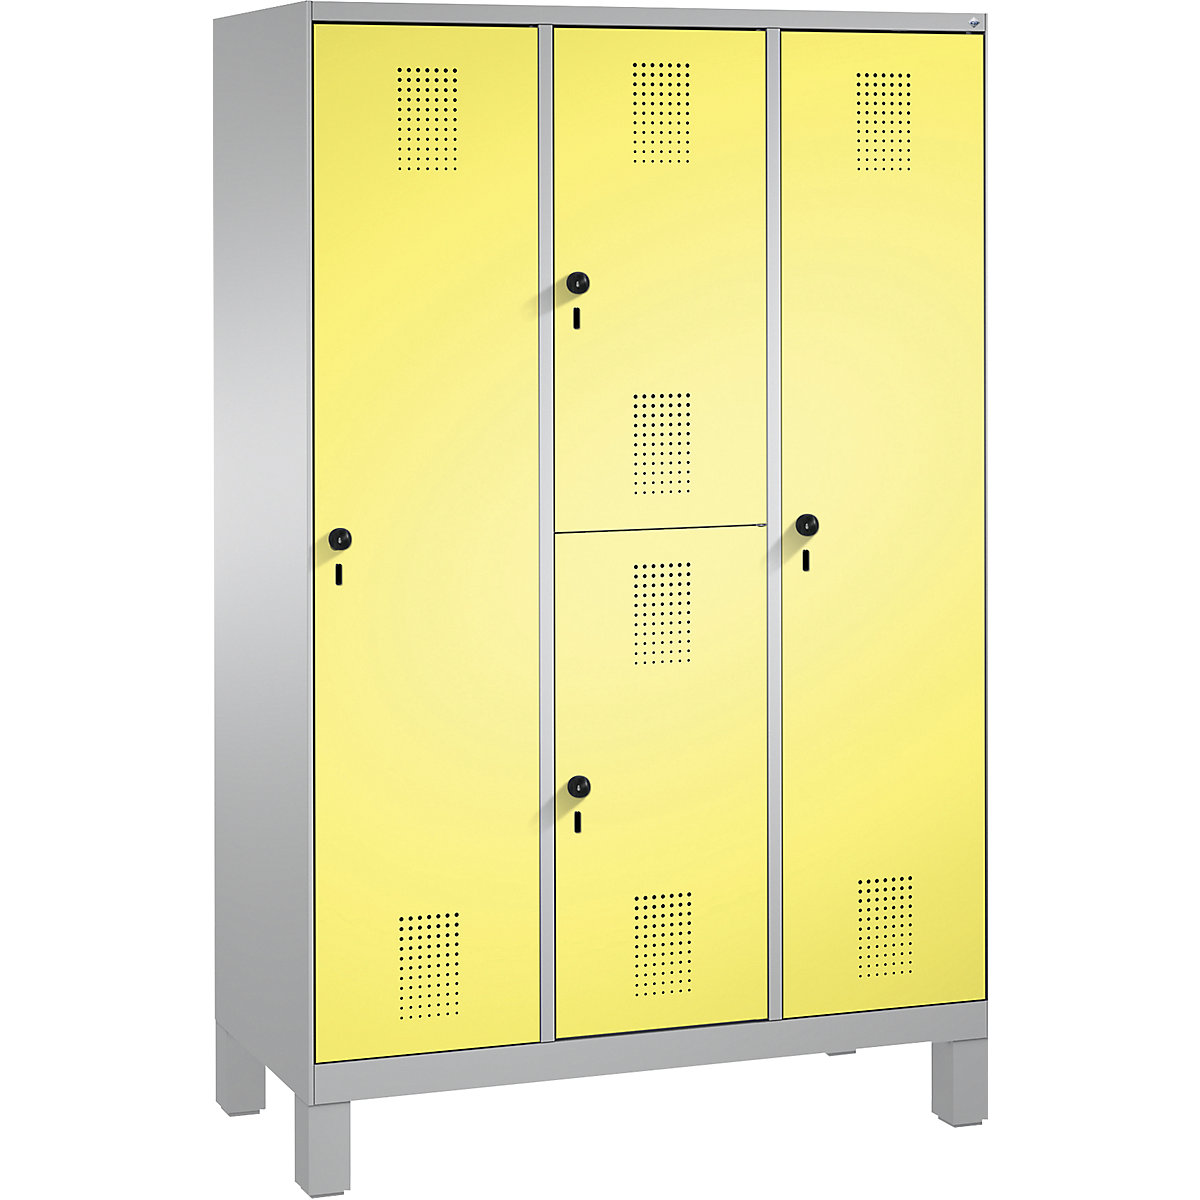 Kombinovaná skříň EVOLO, jednopatrová a dvoupatrová – C+P, 3 oddíly, 4 dveře, šířka oddílu 400 mm, s nohami, bílý hliník / sírová žlutá-11